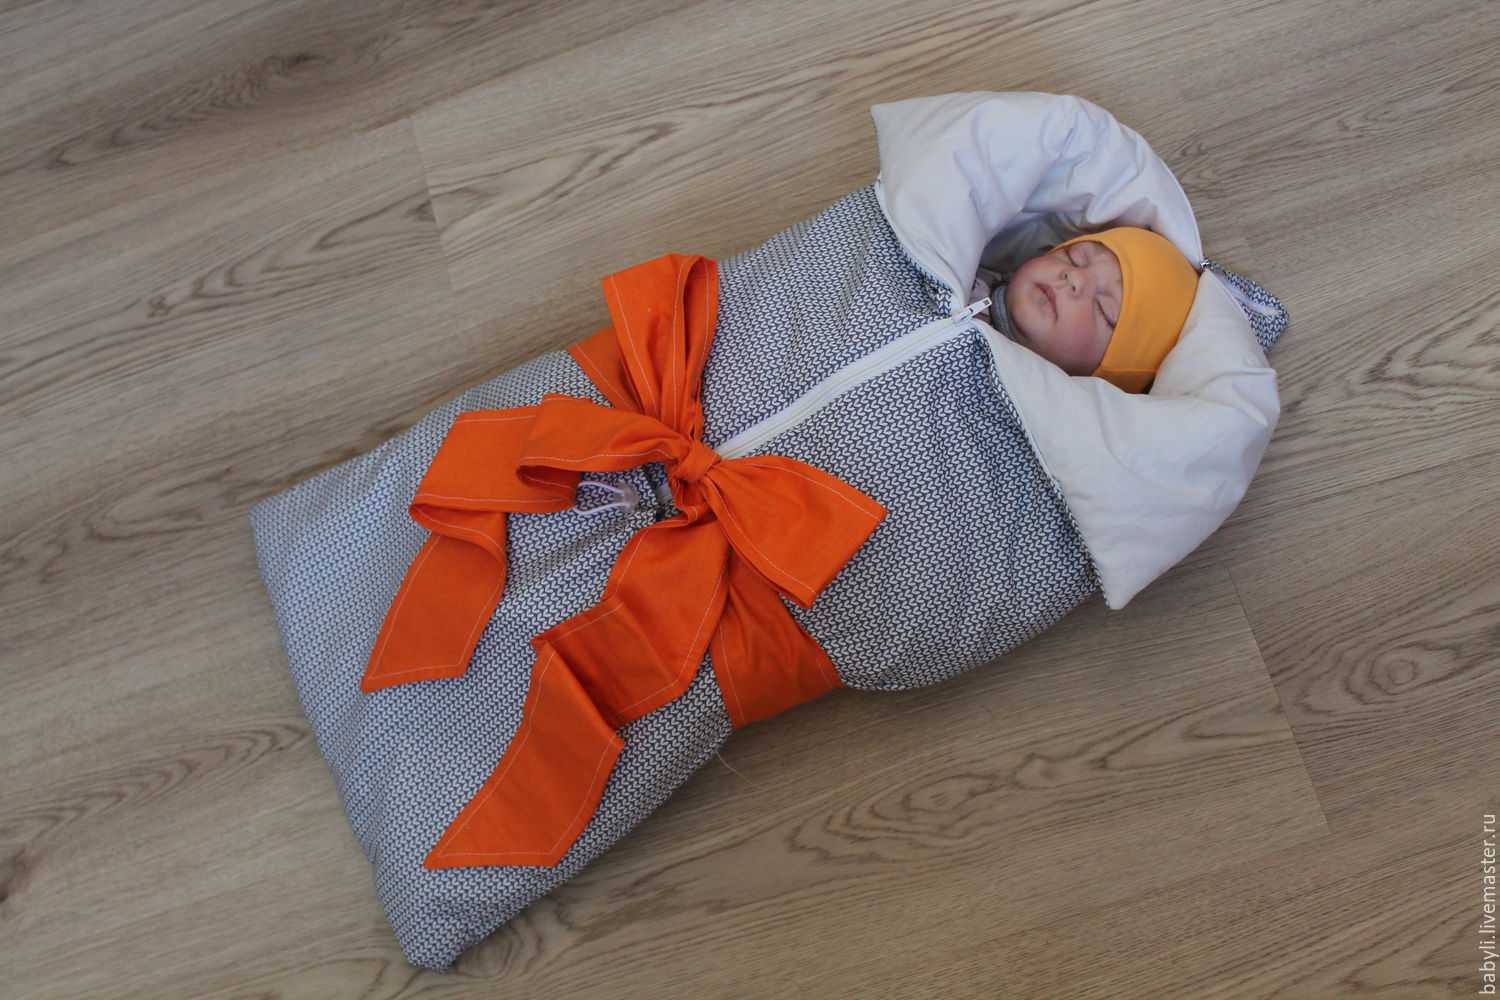 Как сшить детское одеяло своими руками для новорожденного: пошаговая инструкция